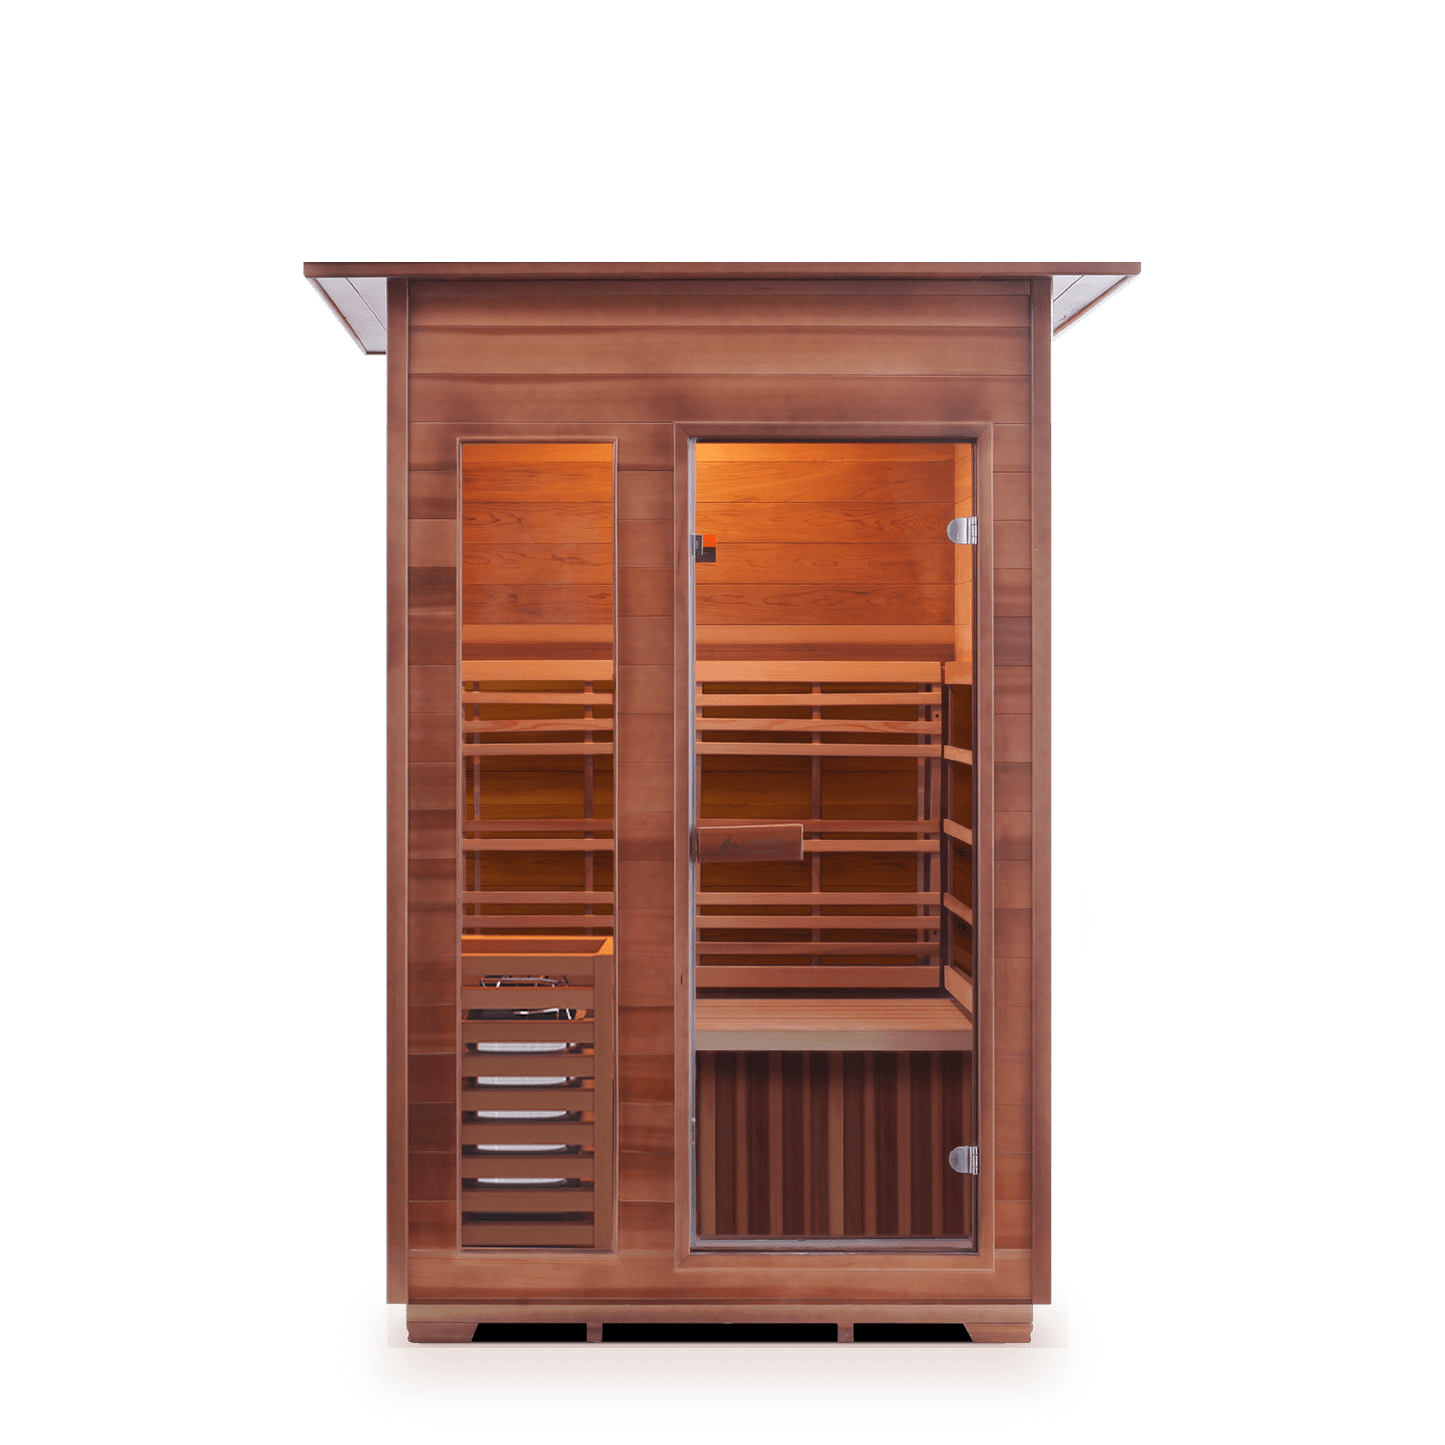 Enlighten Dry Traditional Sauna SunRise - 2 Indoor - 2 Person Sauna